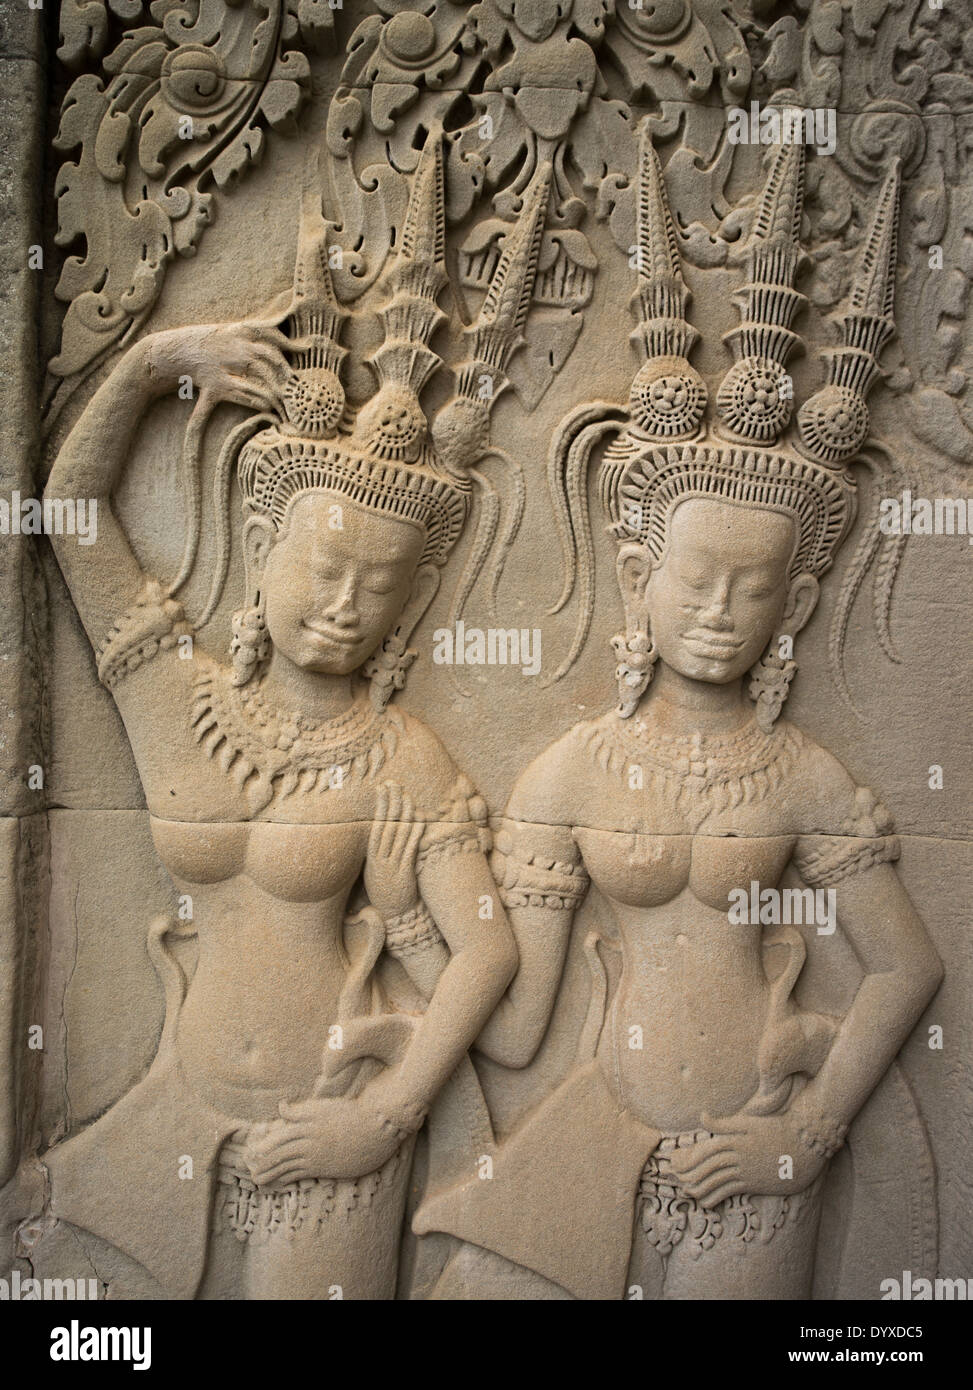 Grès Apsara bas-relief sculpté à Angkor Wat, Temple bouddhiste, Siem Reap, Cambodge Banque D'Images